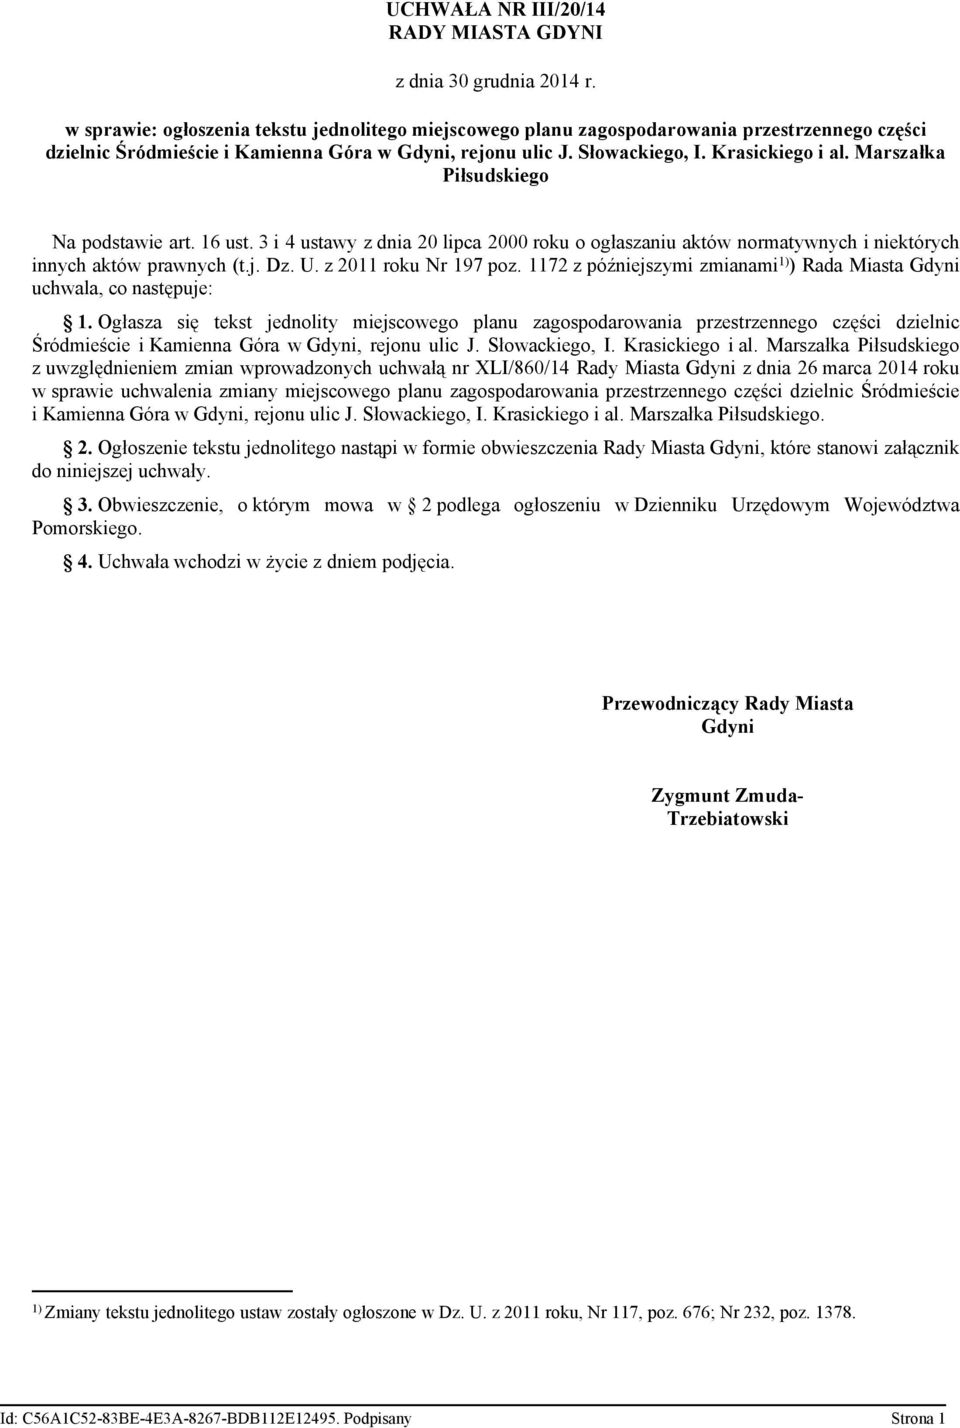 Marszałka Piłsudskiego Na podstawie art. 16 ust. 3 i 4 ustawy z dnia 20 lipca 2000 roku o ogłaszaniu aktów normatywnych i niektórych innych aktów prawnych (t.j. Dz. U. z 2011 roku Nr 197 poz.